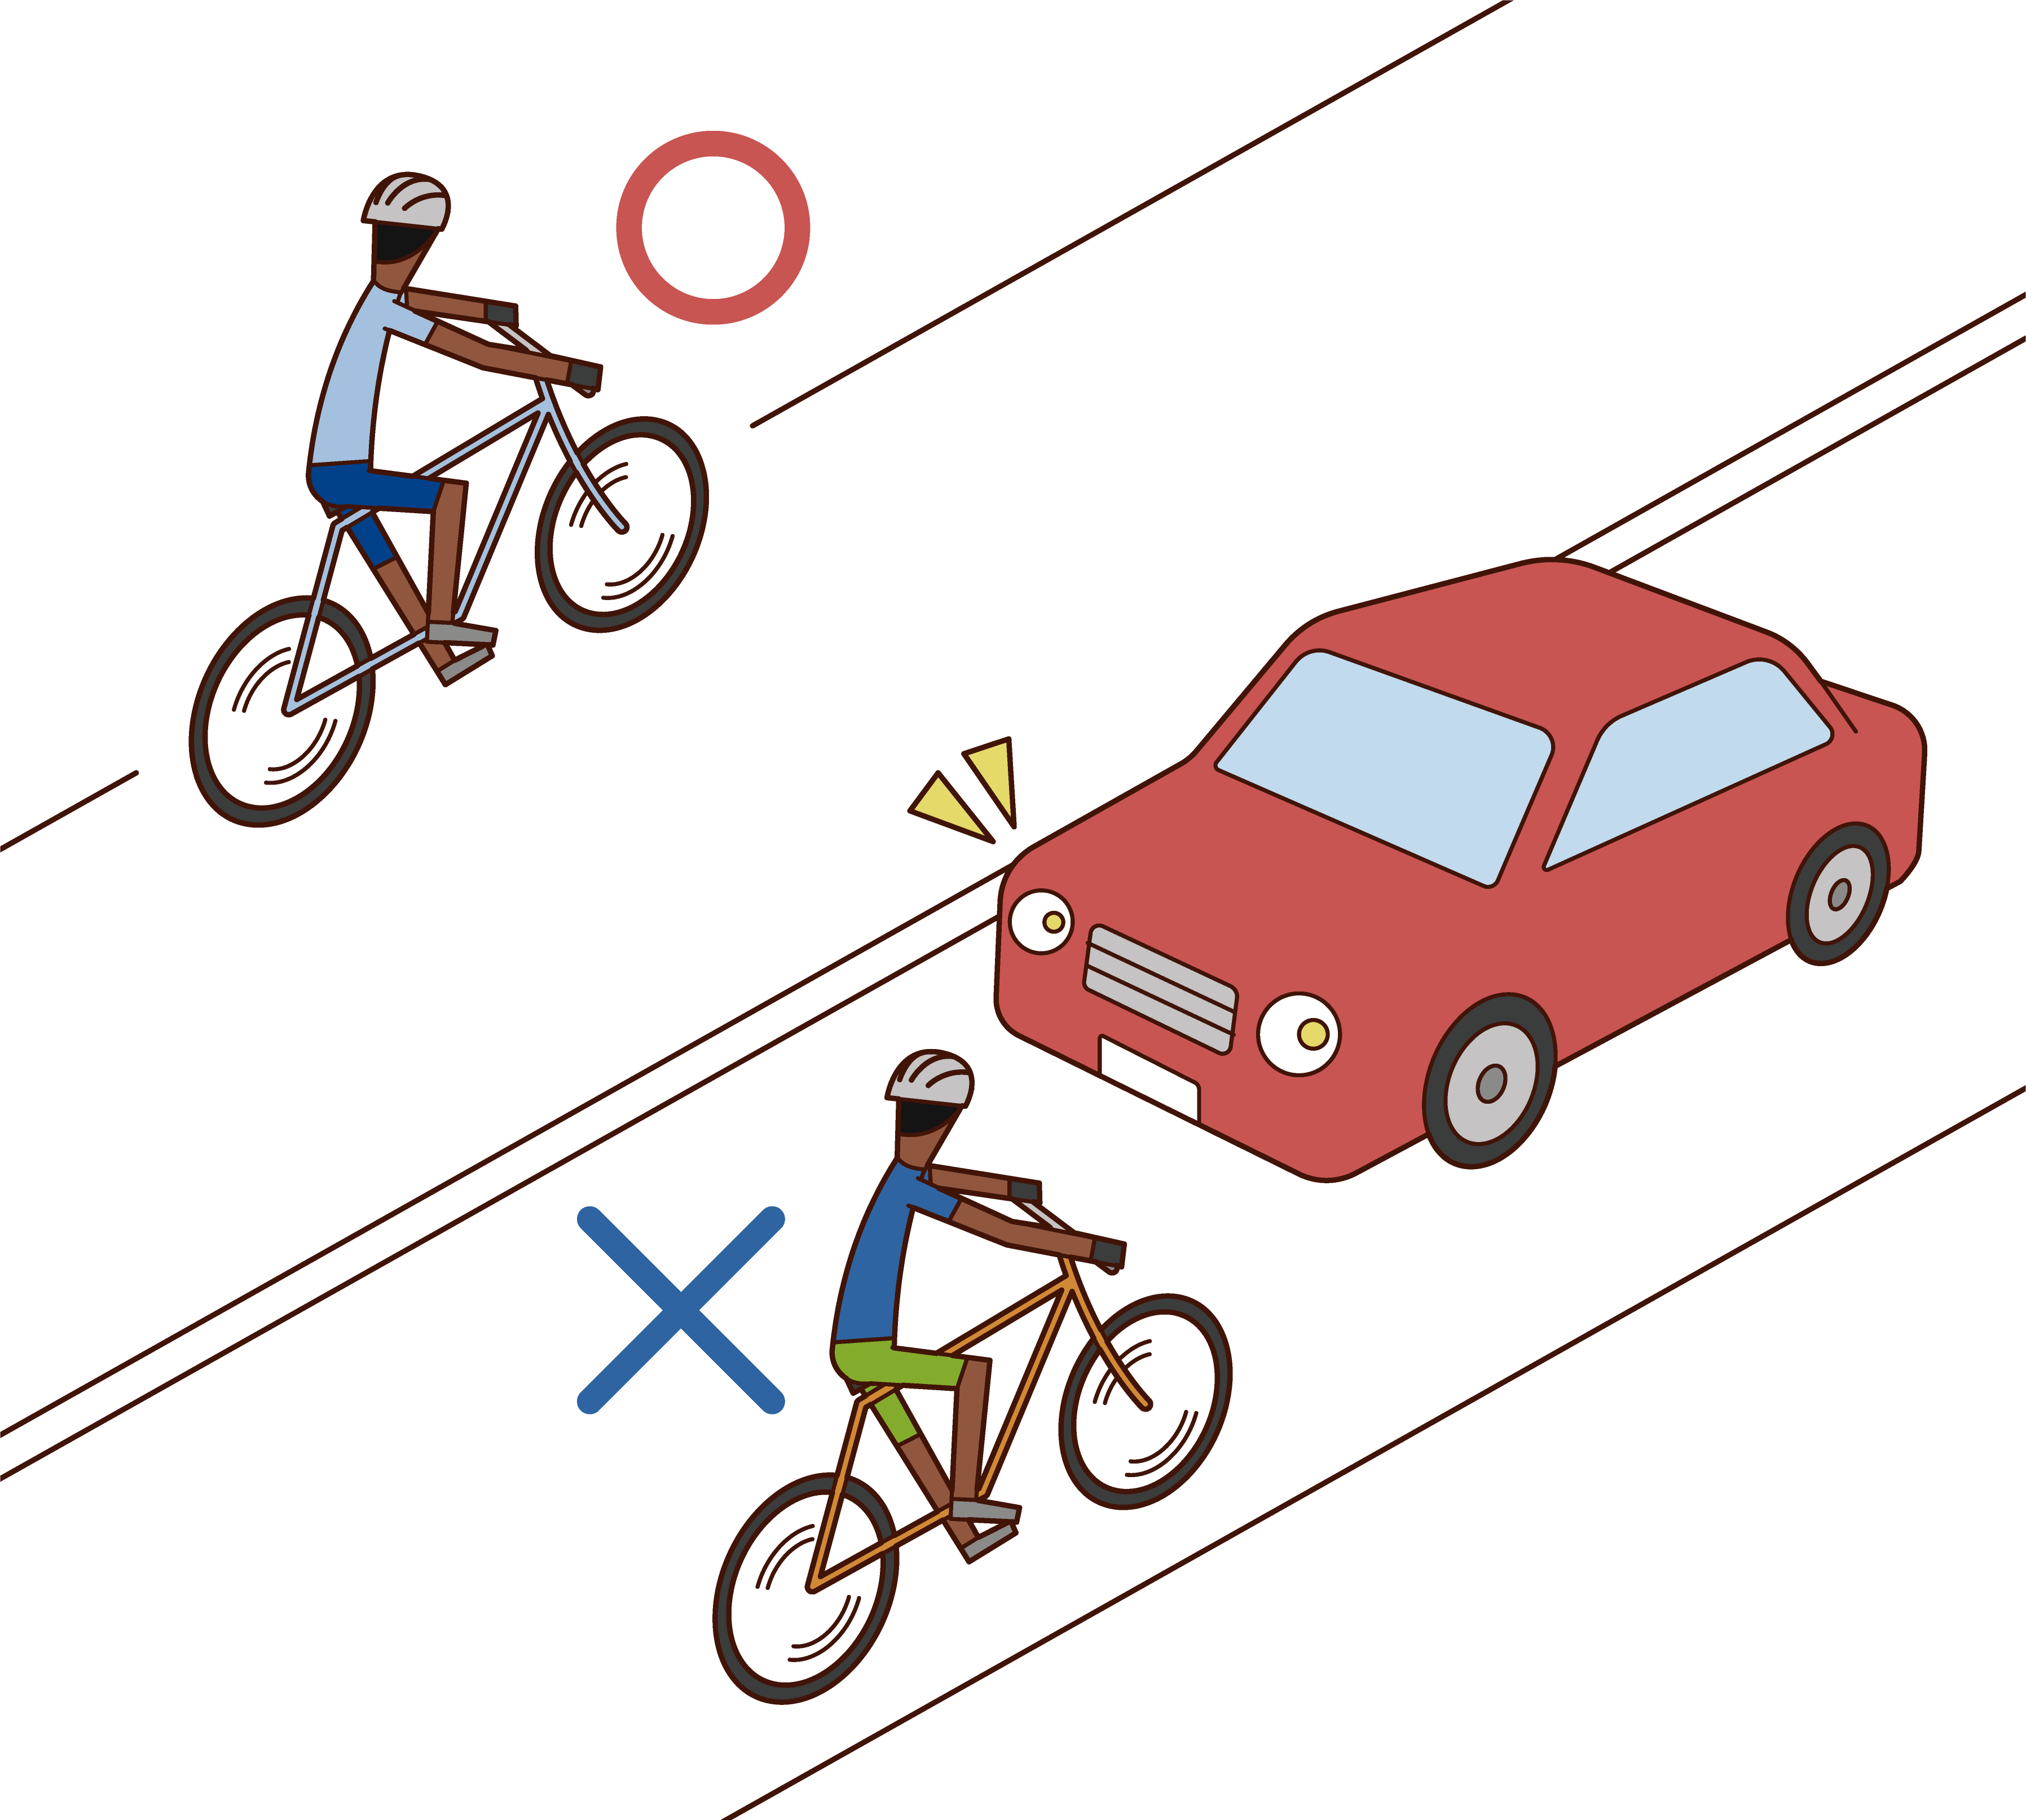 自転車は左側を通行するルールのイラスト フリーイラスト素材 Kukukeke ククケケ